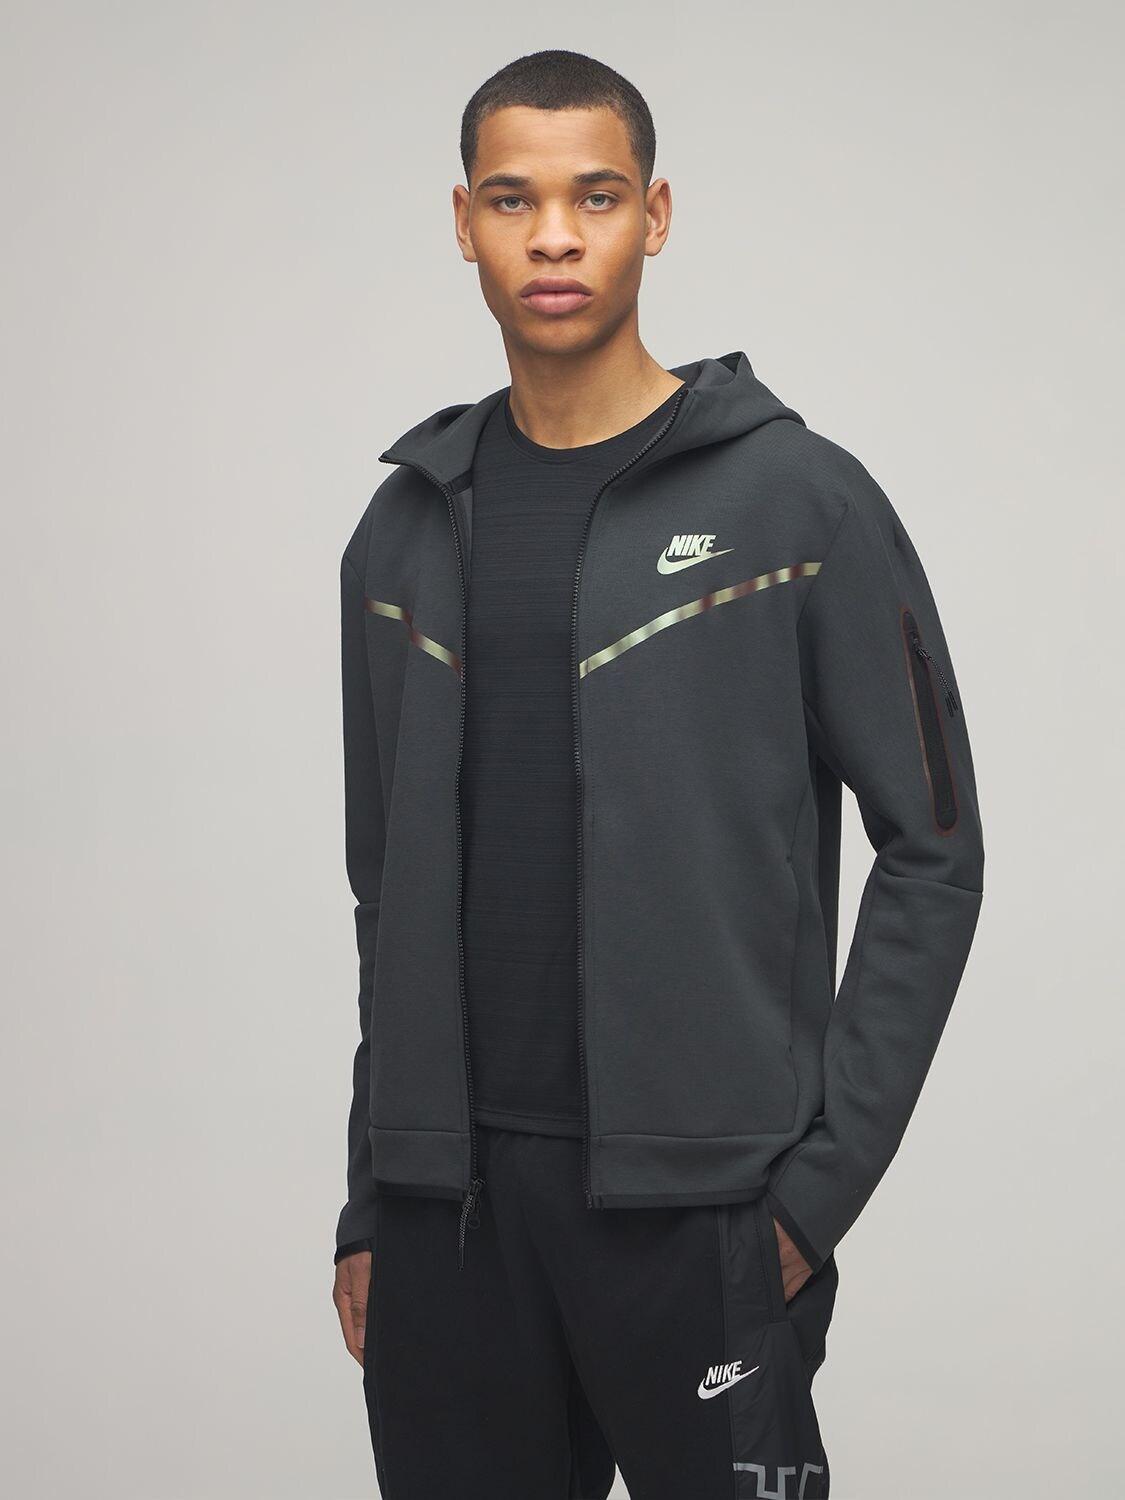 Pijlpunt Snel Vertrouwen Nike Tech Fleece Iridescent Zip Up Sweatshirt in Black for Men | Lyst